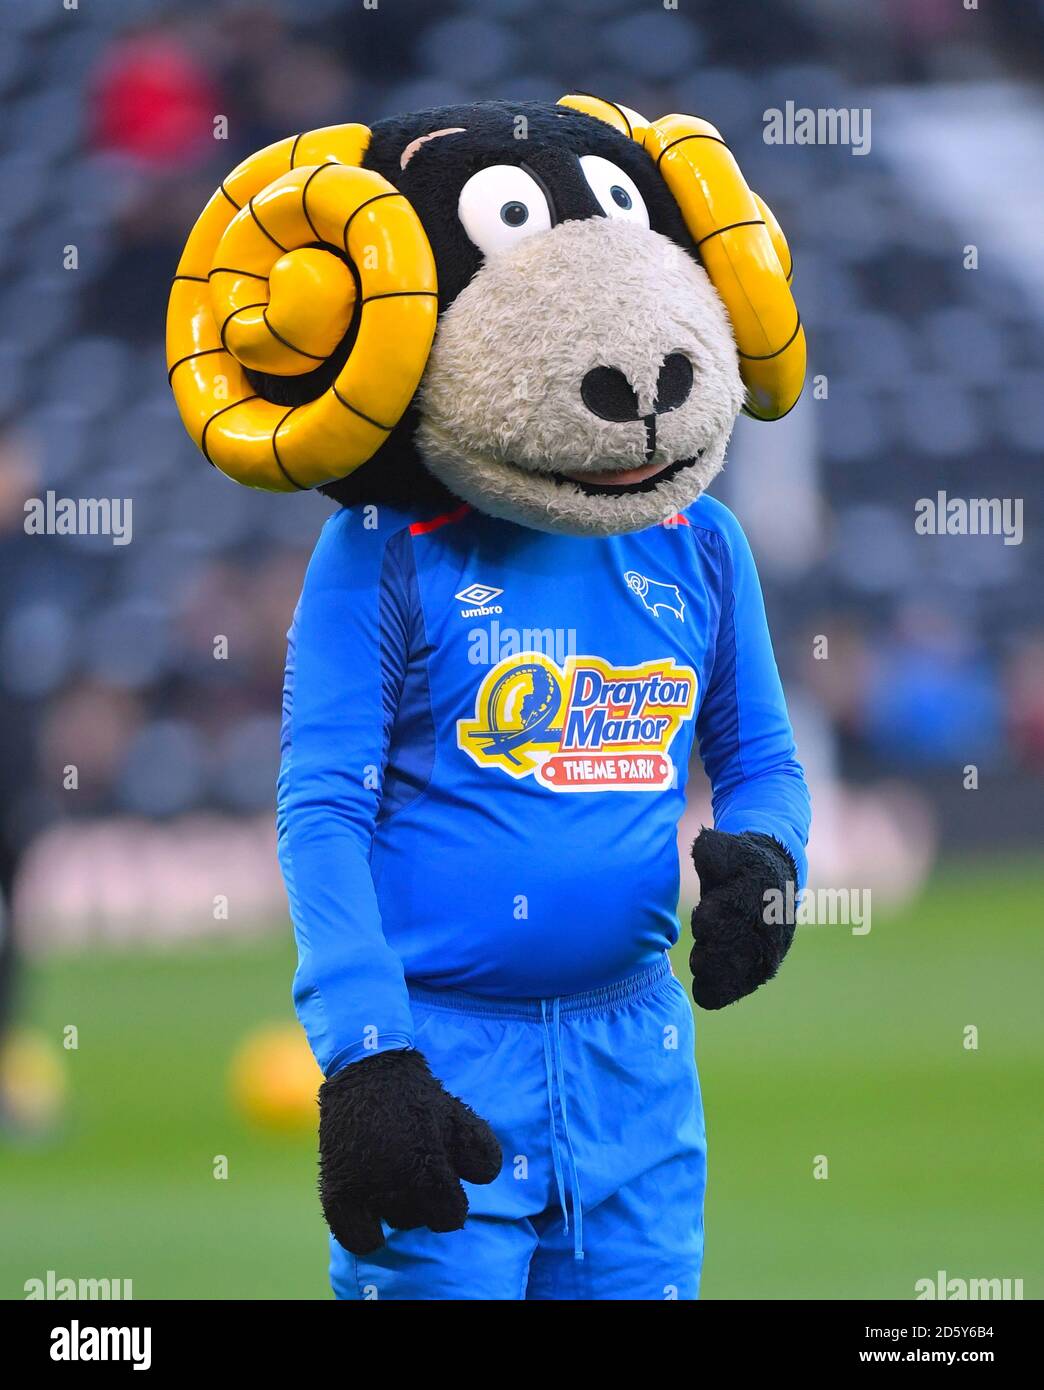 Derby County mascot Rammy the Ram Stock Photo - Alamy